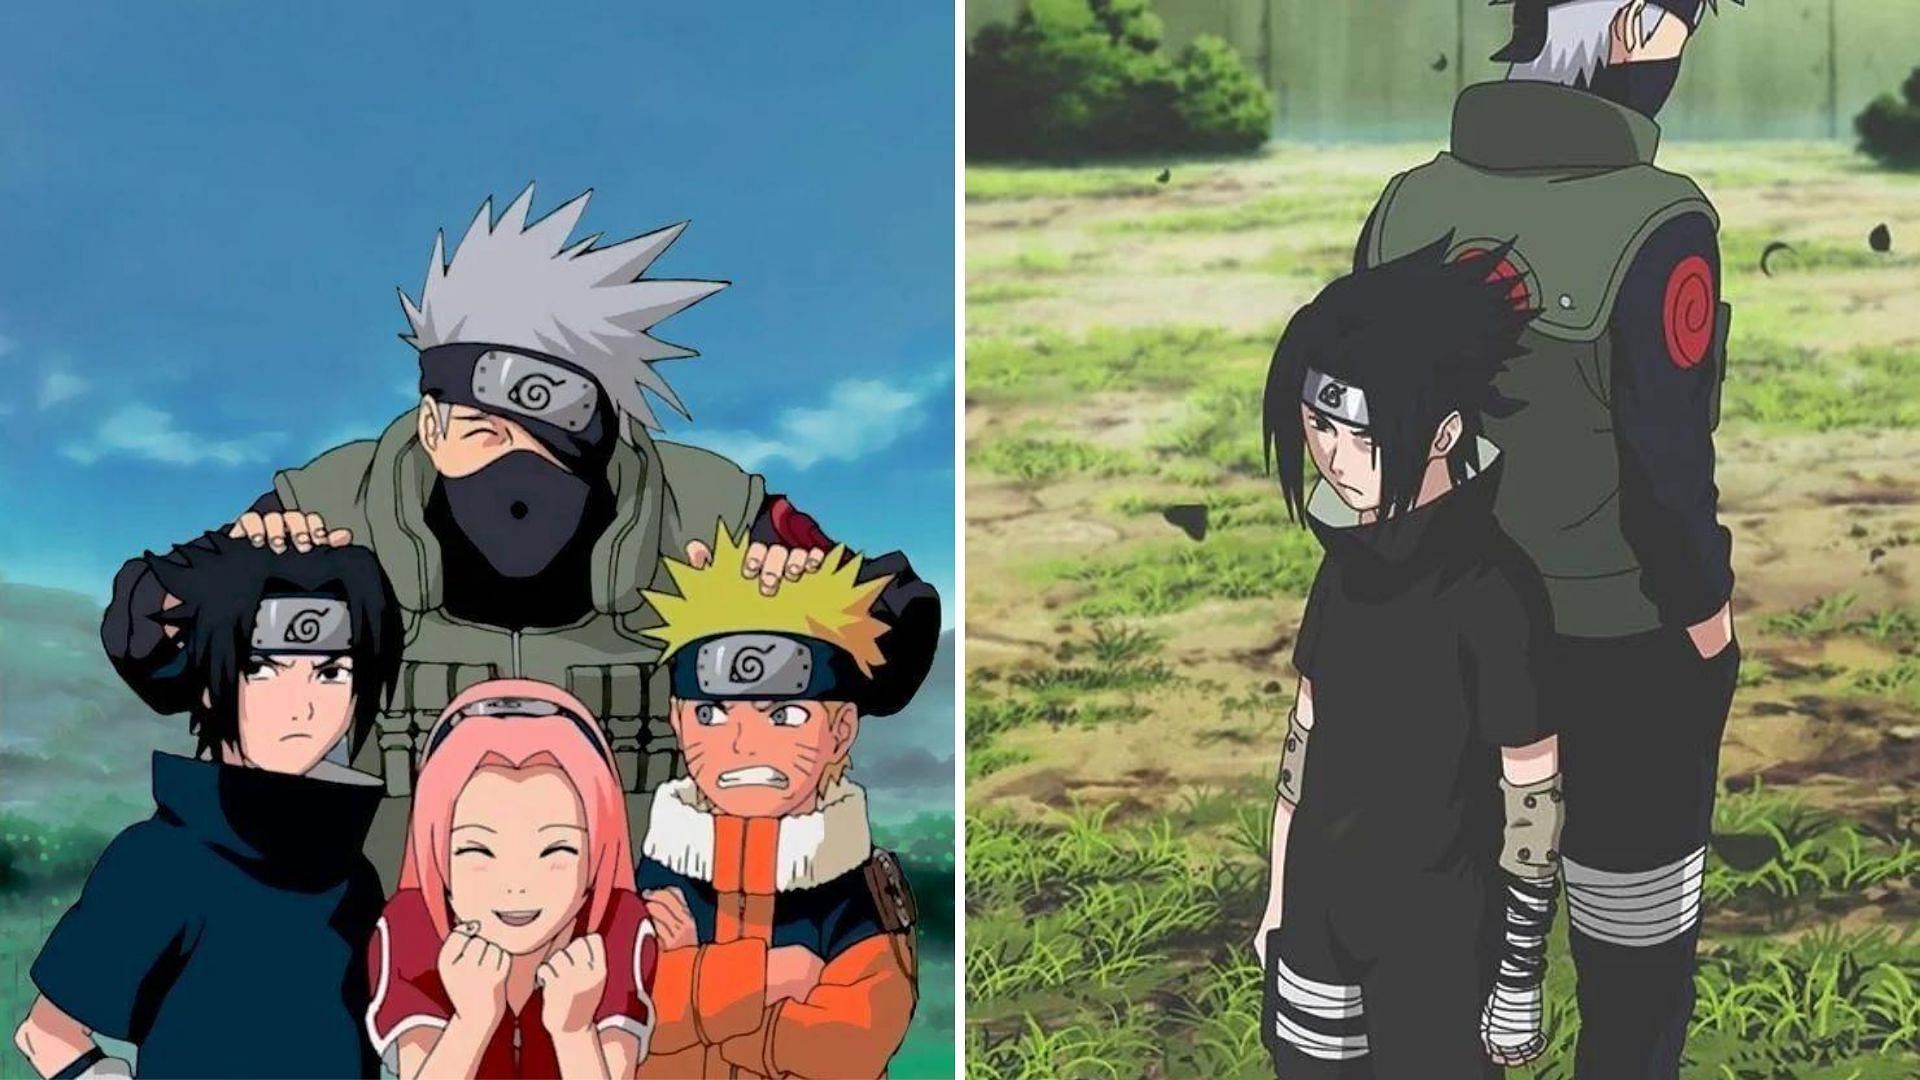 Kakashi - Sasuke has changed so much through the years.